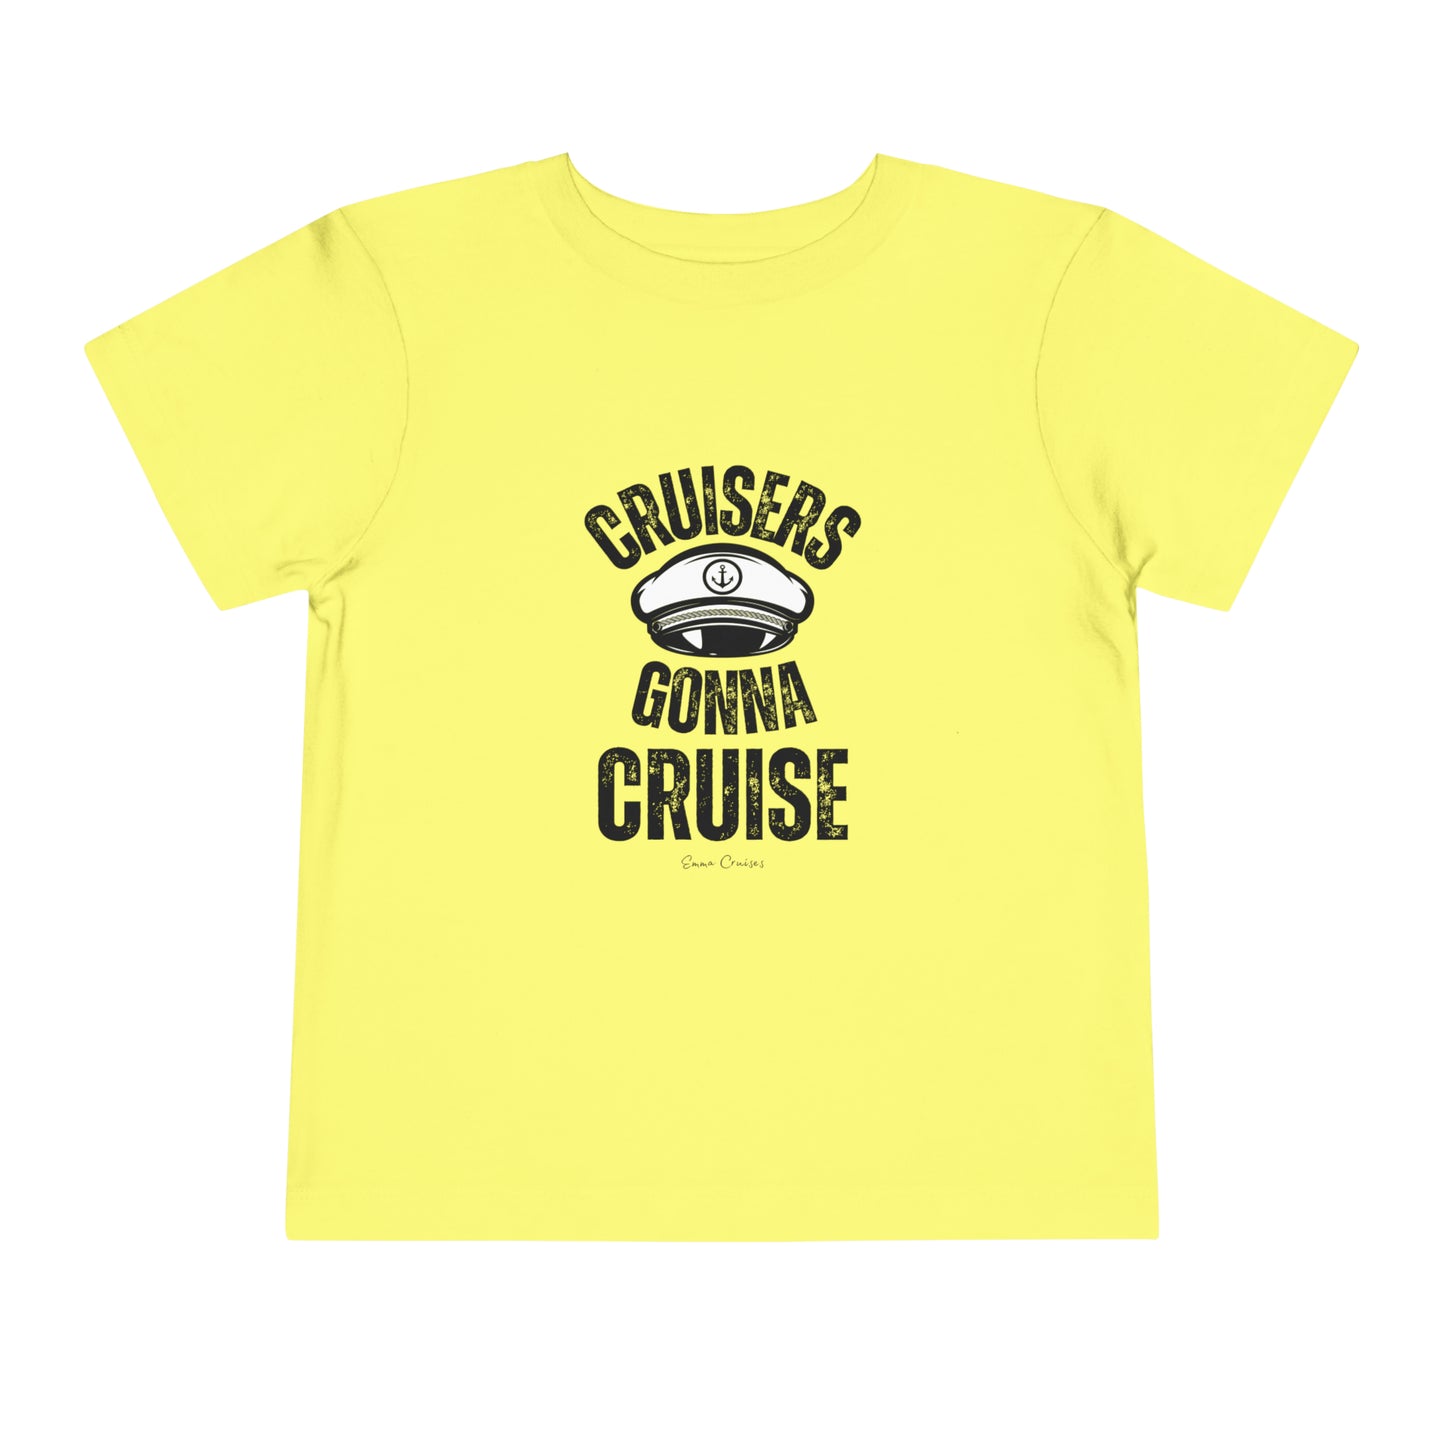 Cruisers Gonna Cruise - Toddler UNISEX T-Shirt